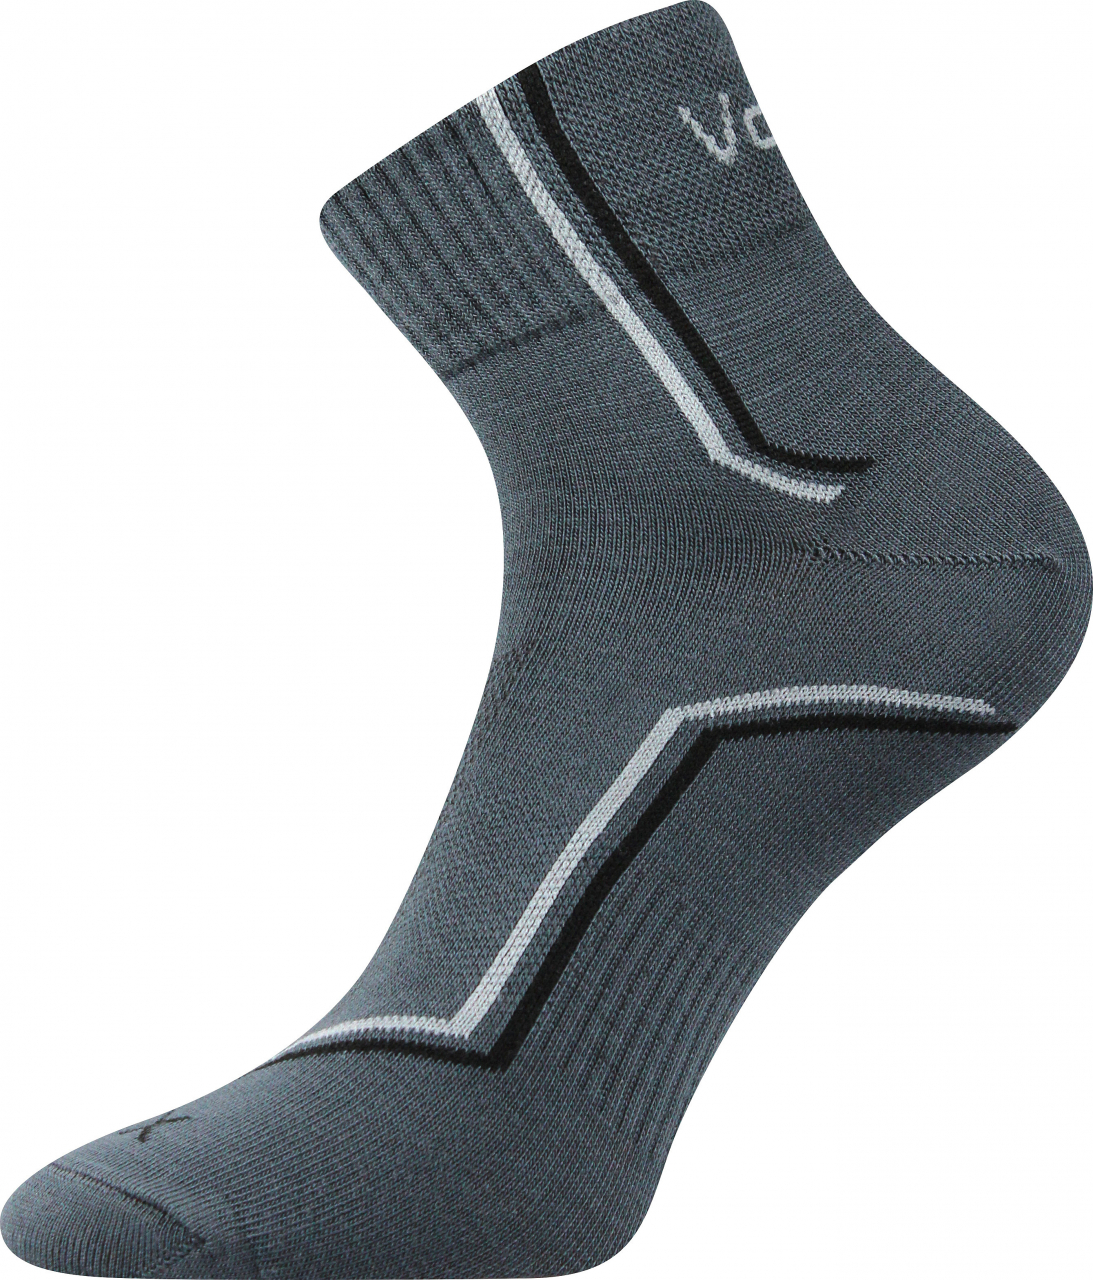 Ponožky sportovní Voxx Kroton silproX - tmavě šedé, 35-38